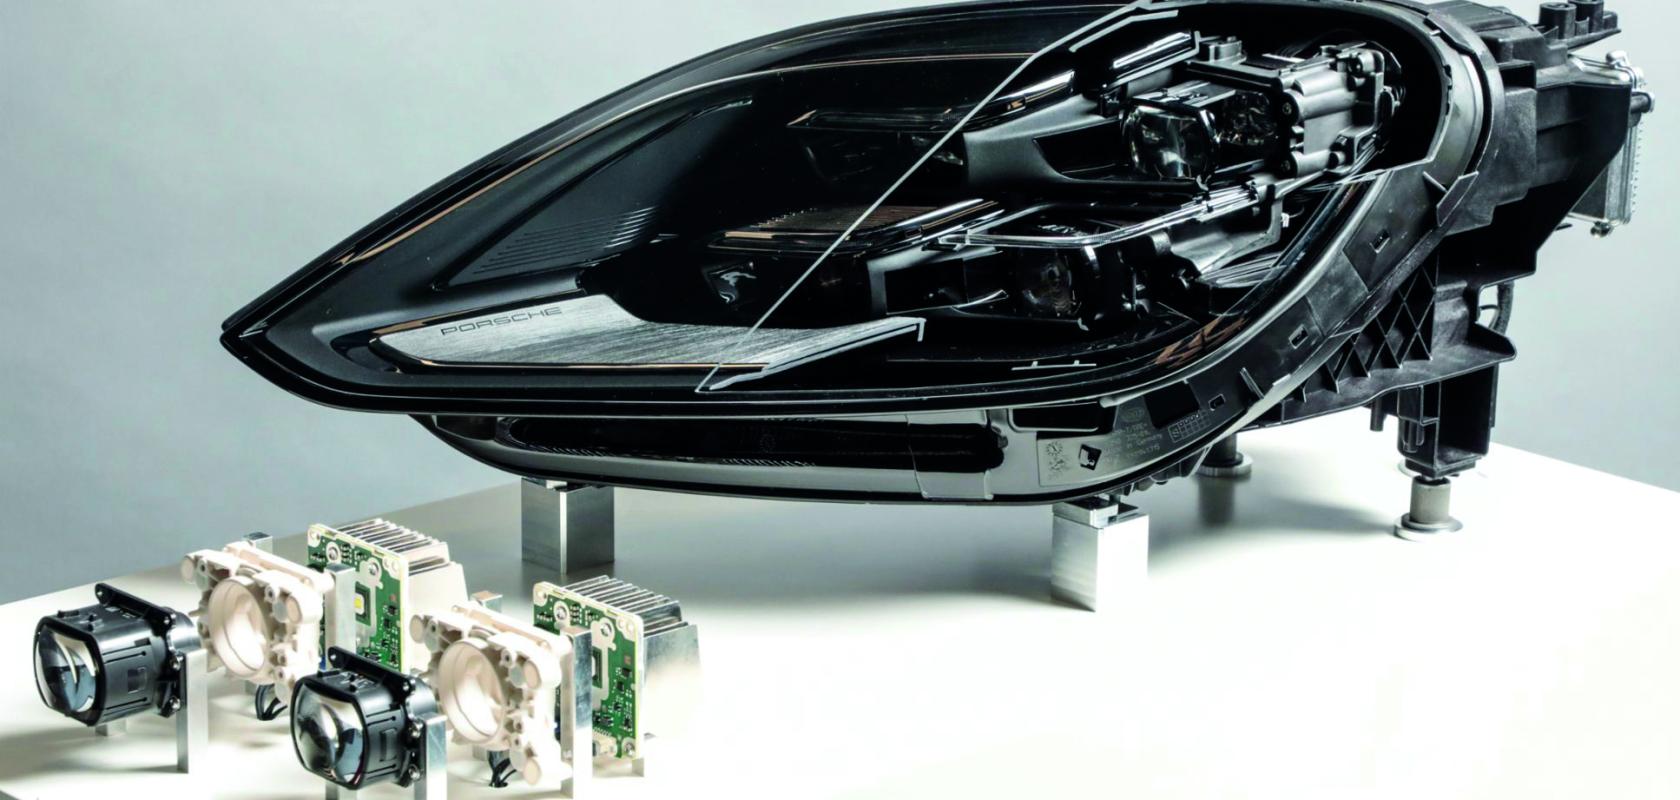 Porsche high-definition microLED headlight 